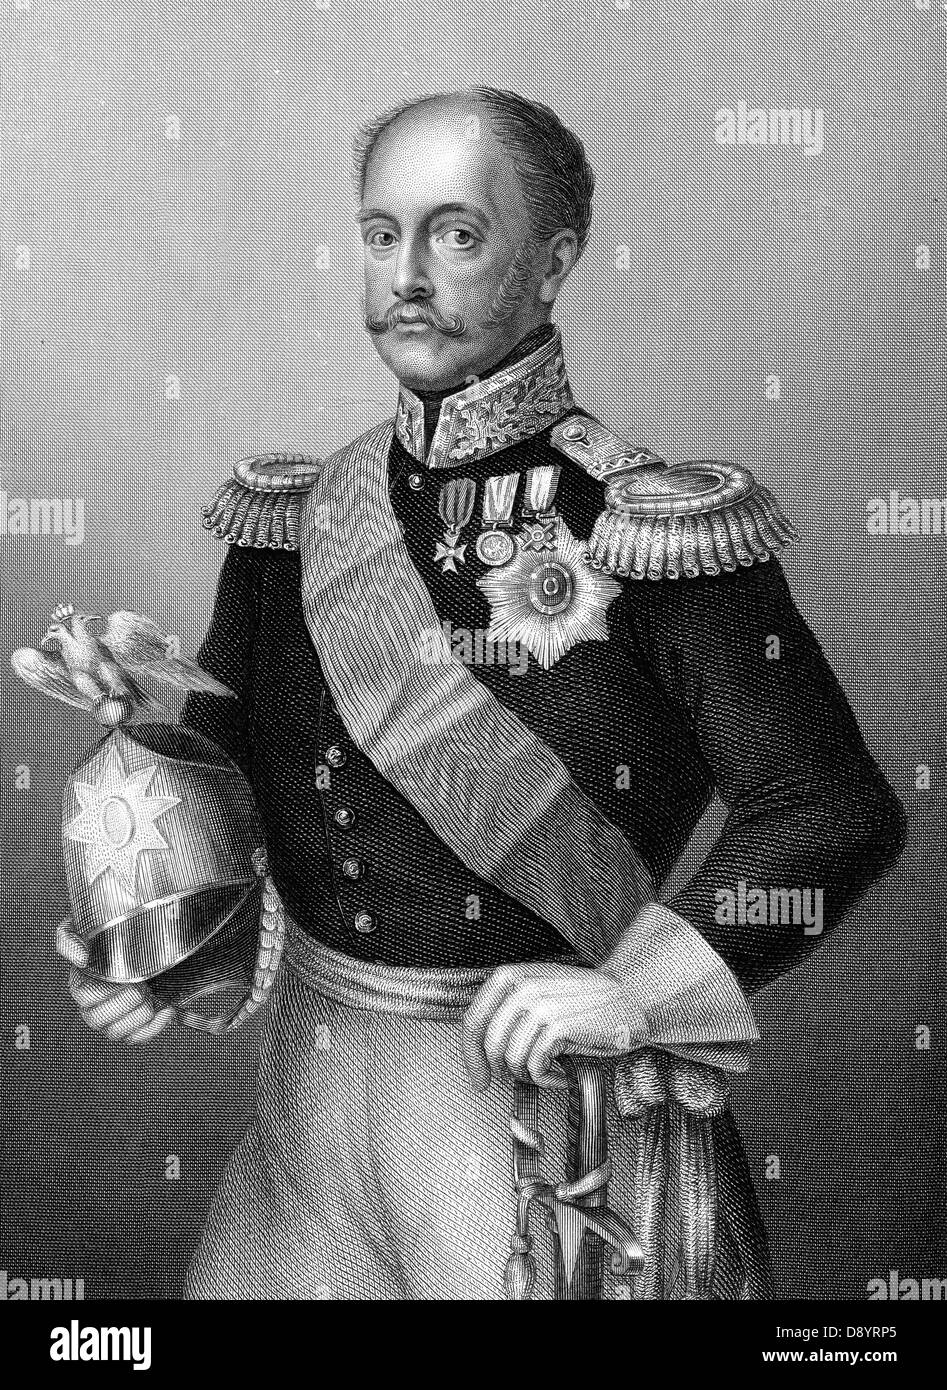 Nicholas ich Zar von Russland von 1825. Gravur von 1860 Stockfoto